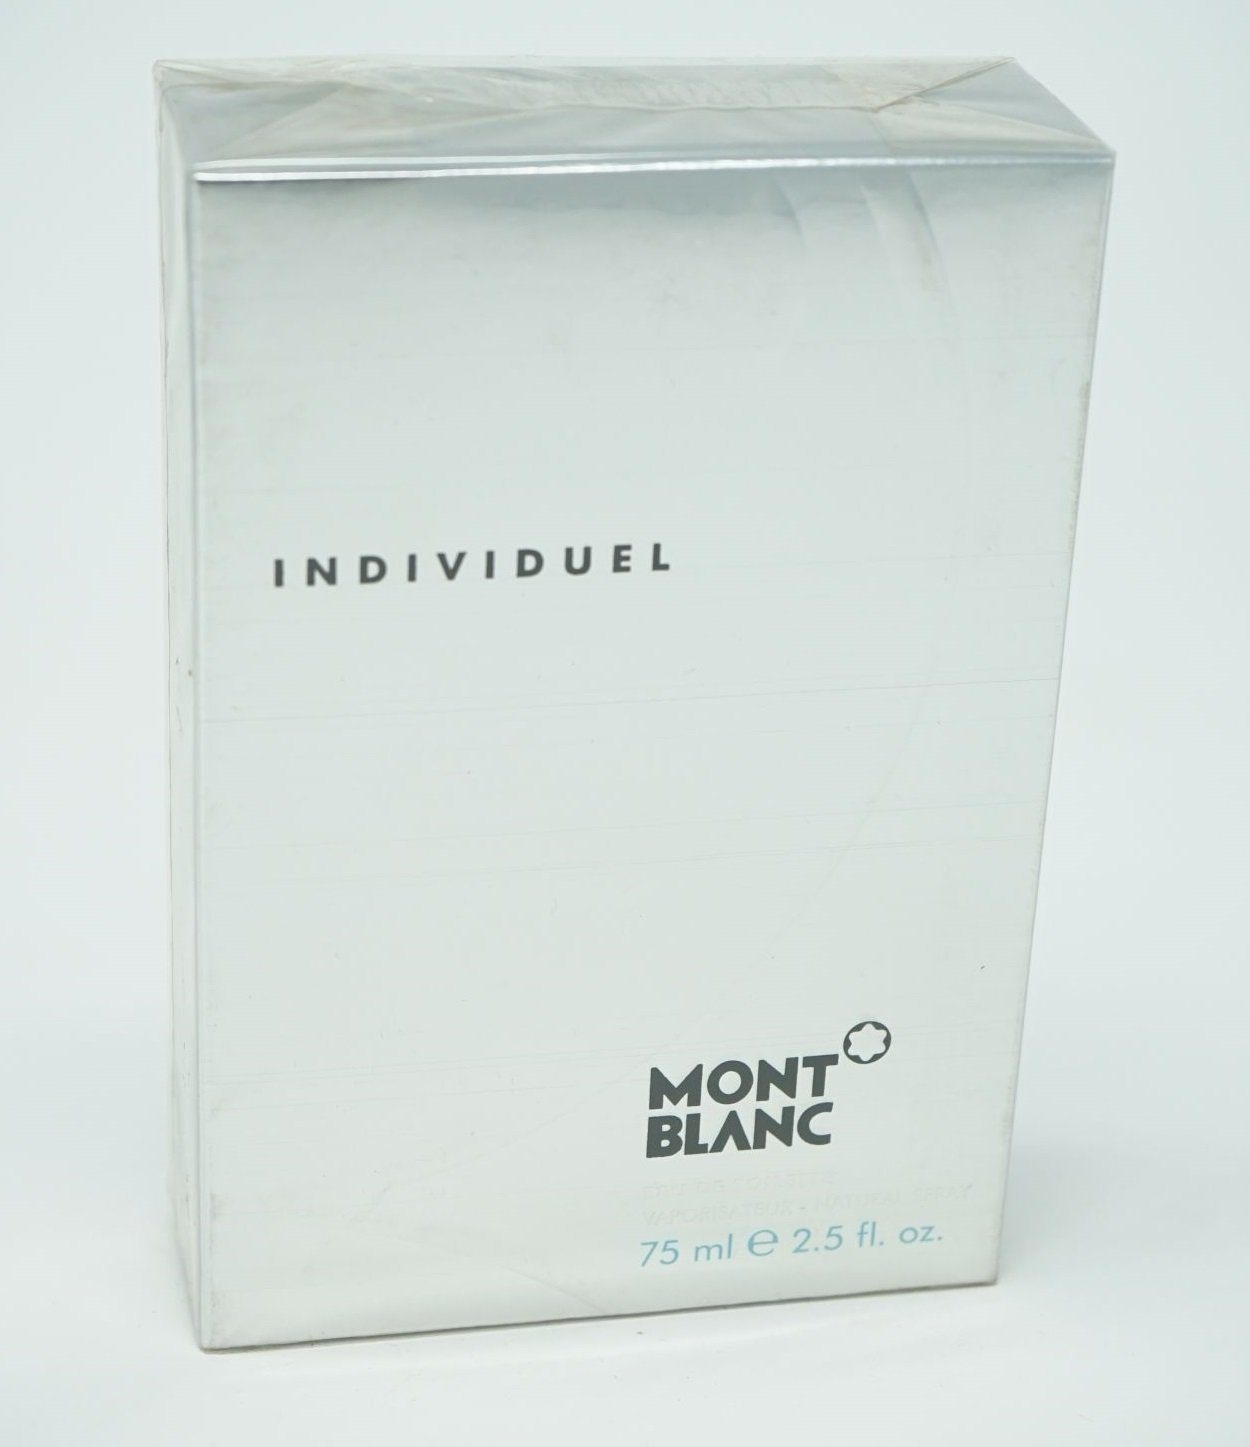 MONTBLANC Eau de Toilette Montblanc Individuel Eau de Toilette Spray 75 ml